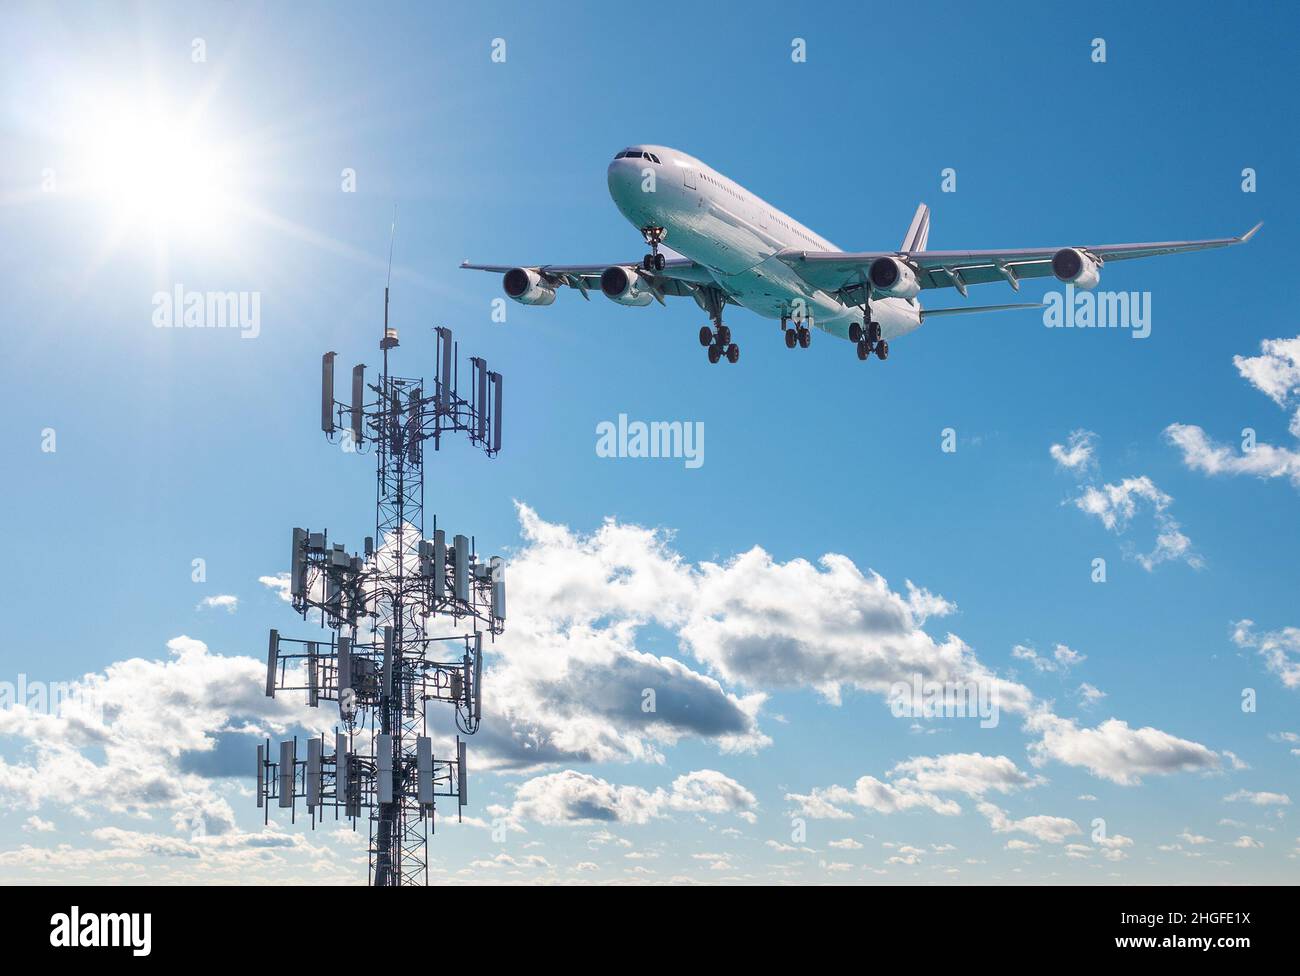 Torre celular móvil con frecuencias de 5G en banda C con aterrizaje de aviones. Disputa con aerolíneas por interferencias entre dispositivos inalámbricos y altímetro de avión Foto de stock